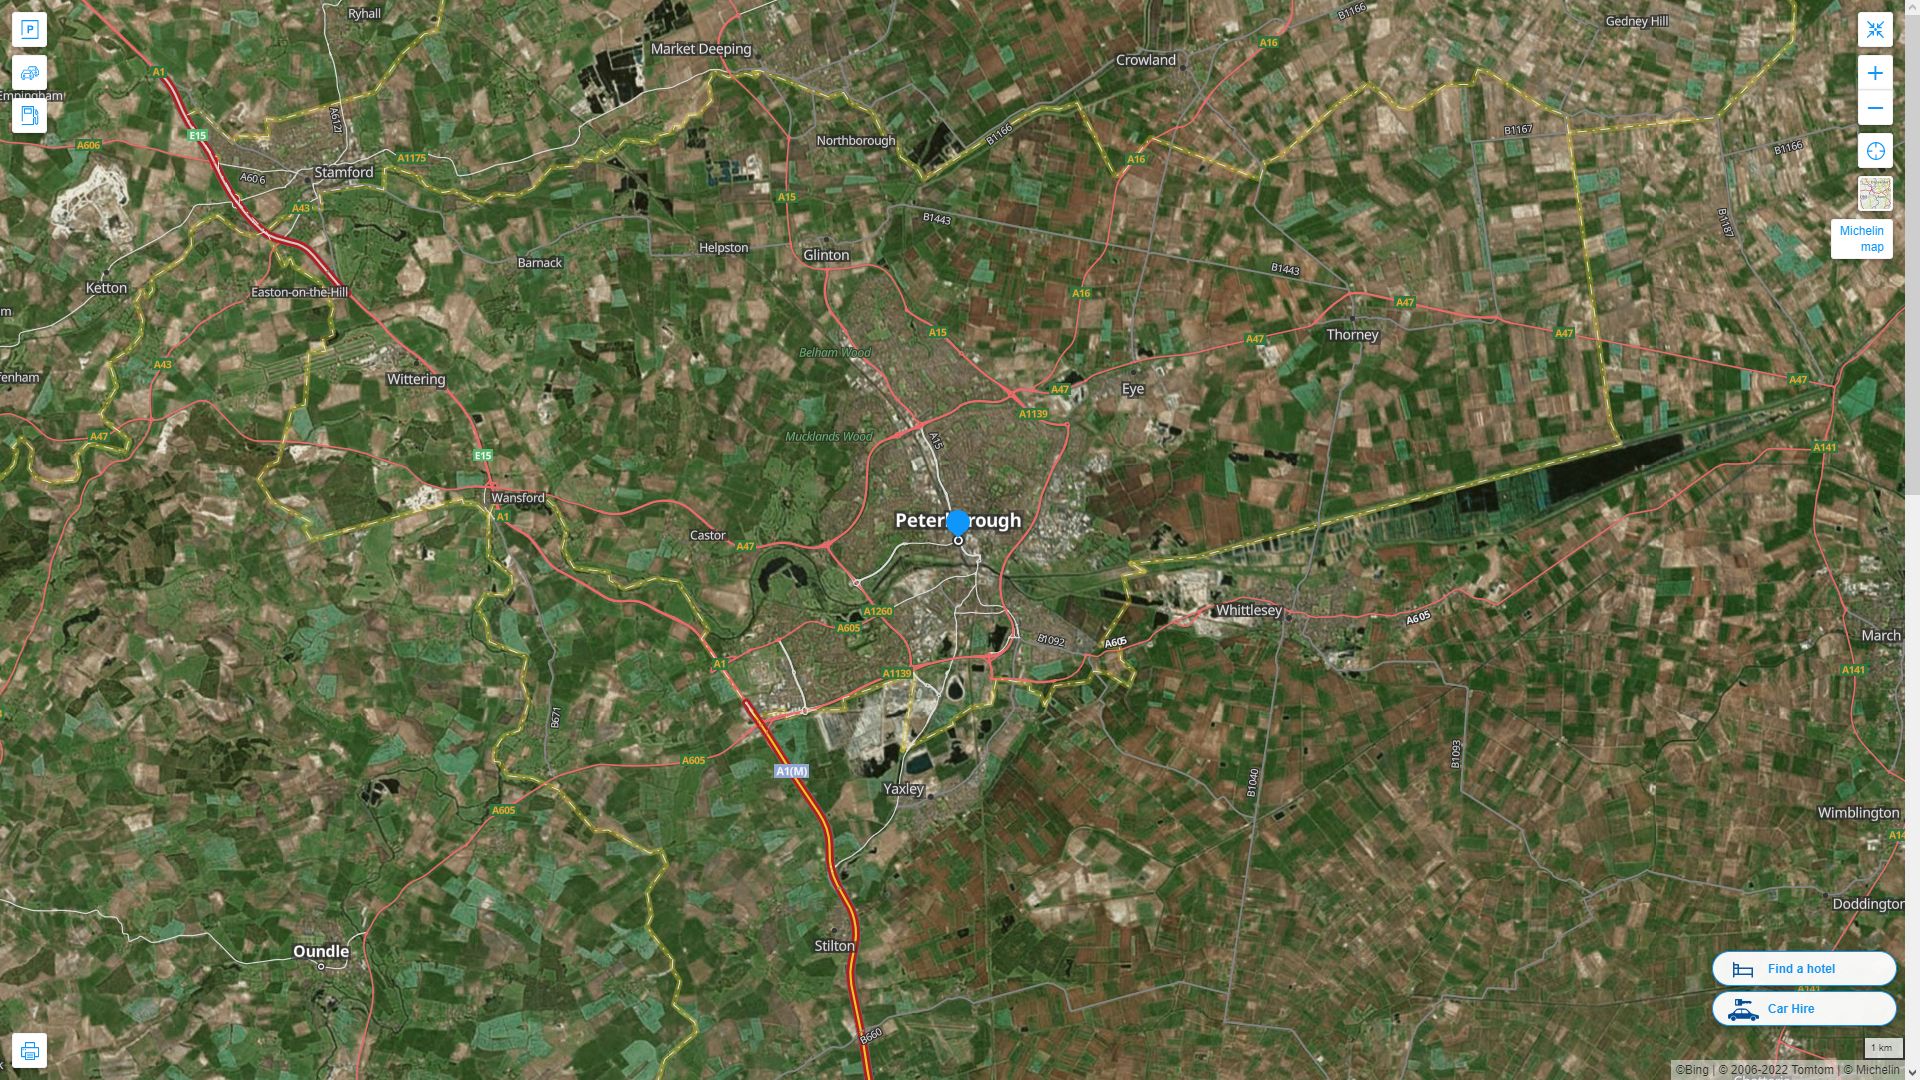 Peterborough Royaume Uni Autoroute et carte routiere avec vue satellite